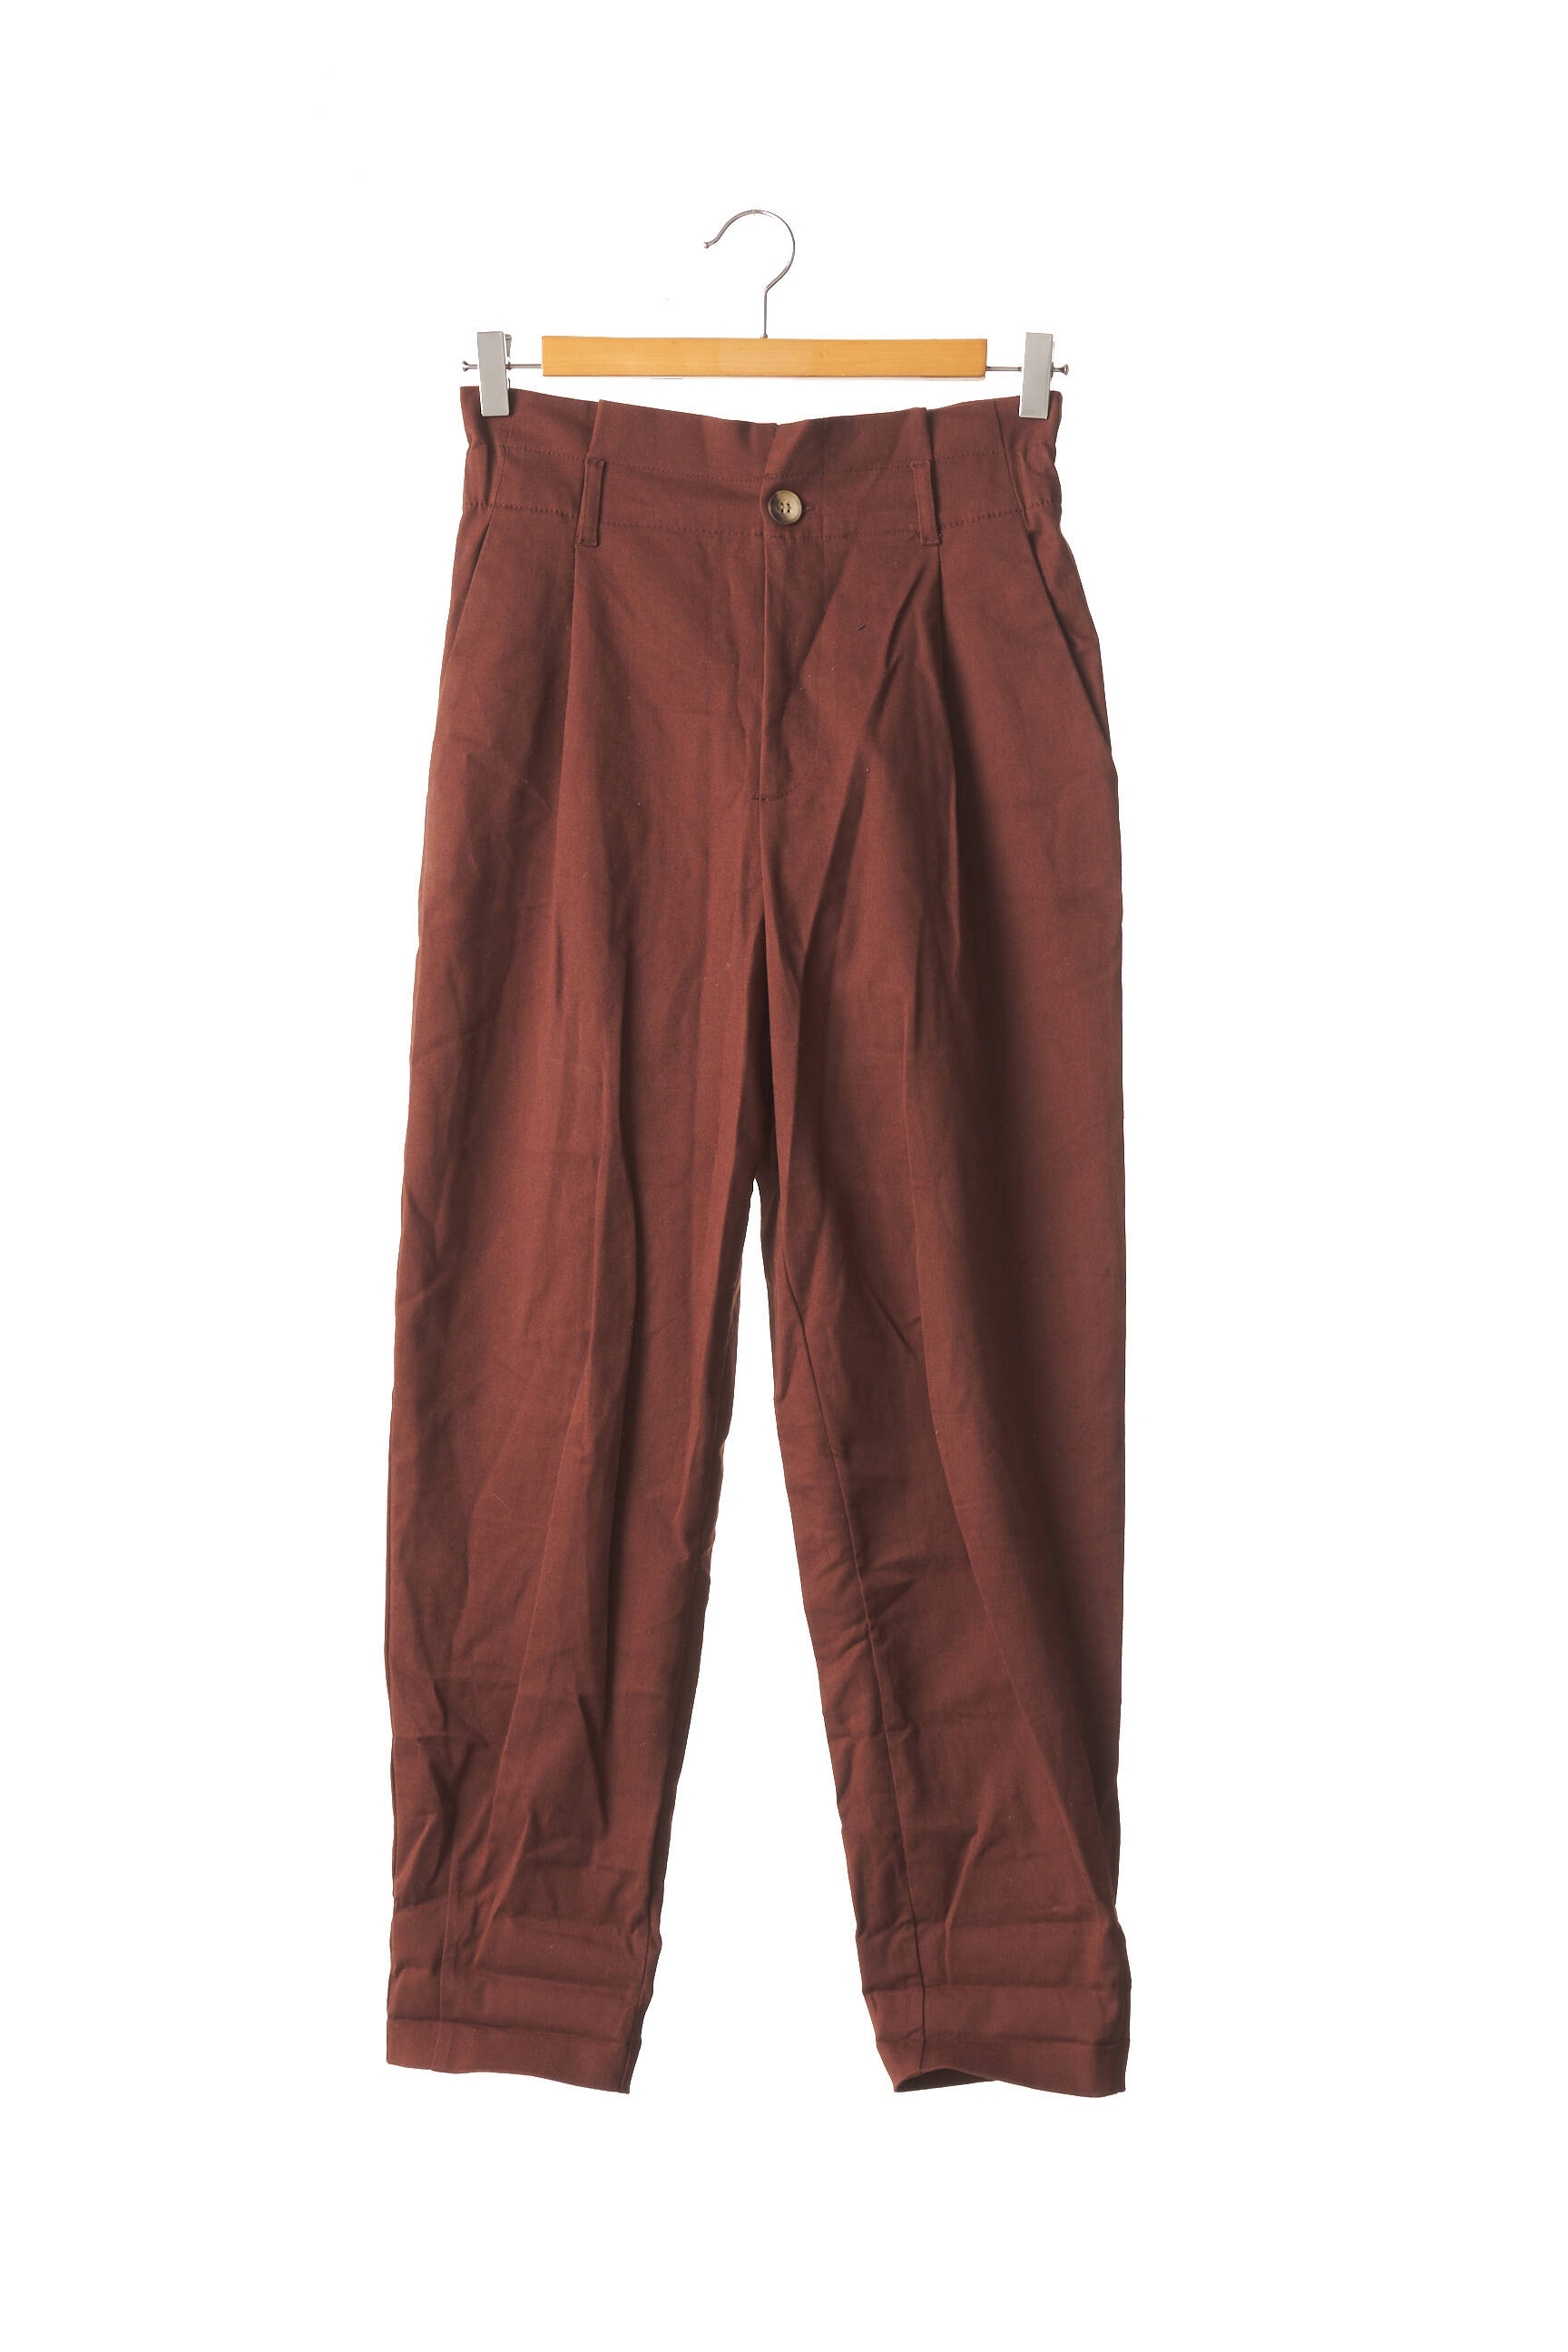 Zara Pantalons Larges Femme De Couleur Marron 1947956-marron - Modz